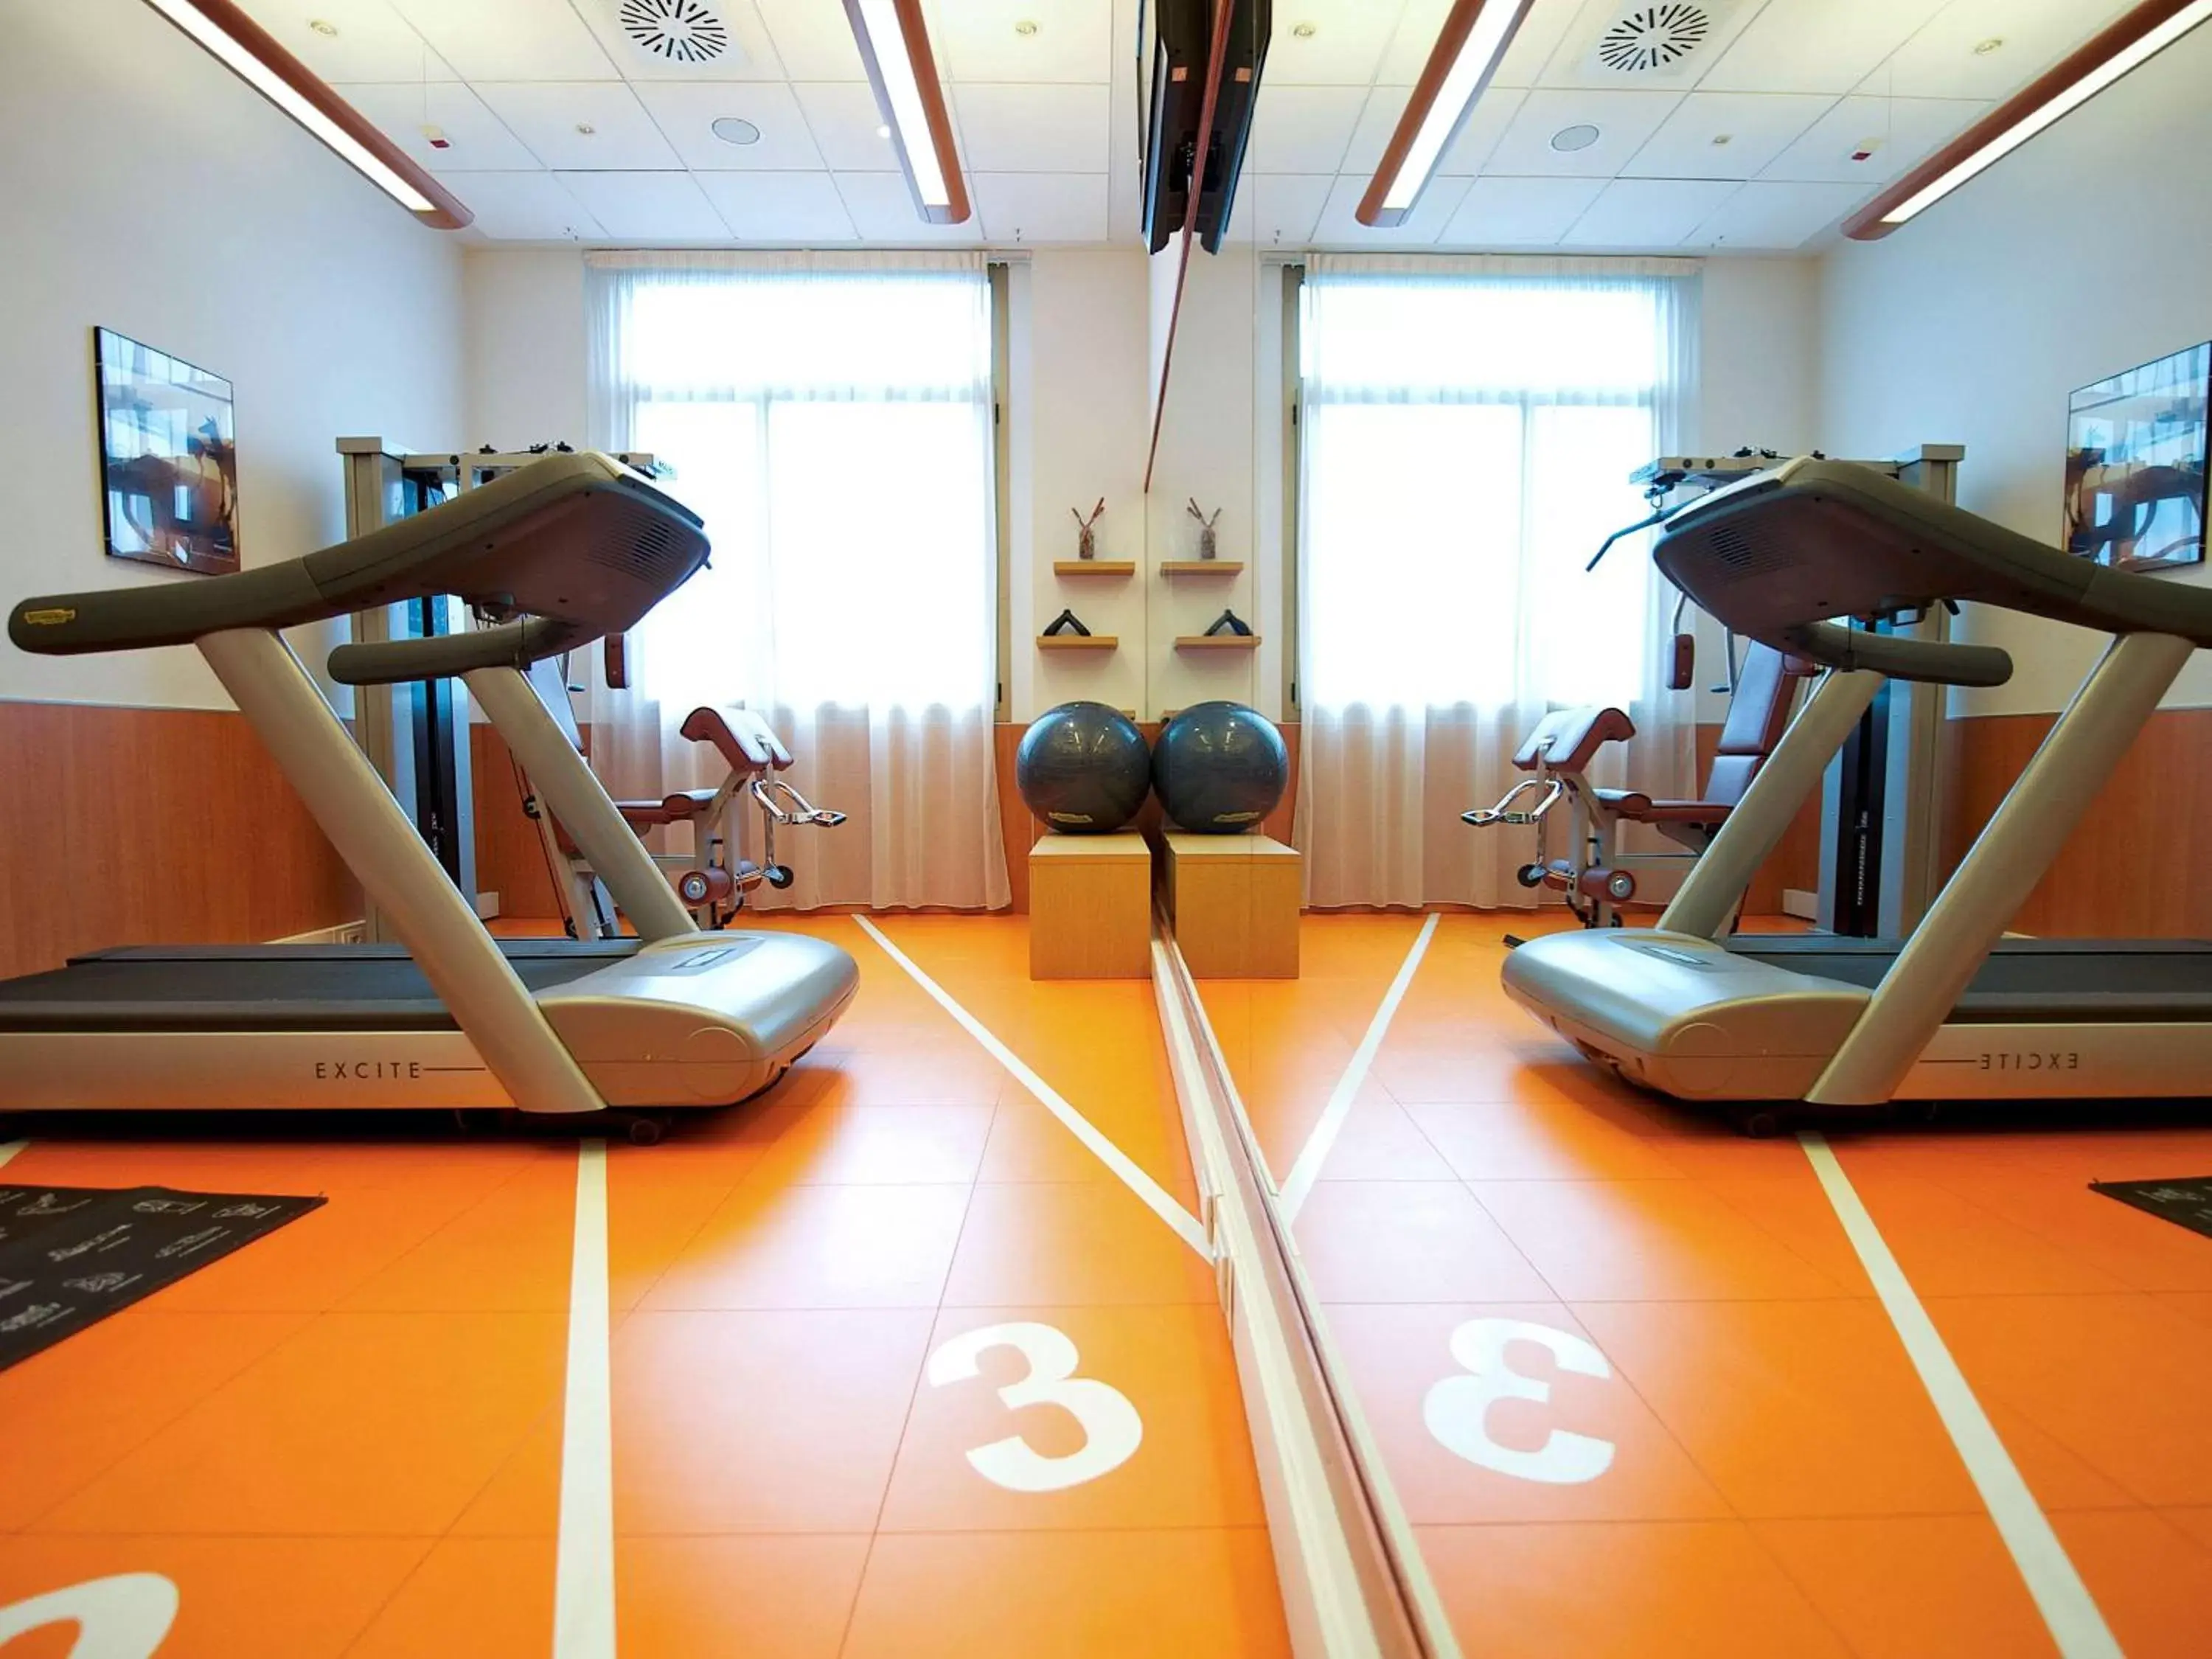 Fitness centre/facilities, Fitness Center/Facilities in Novotel Torino Corso Giulio Cesare